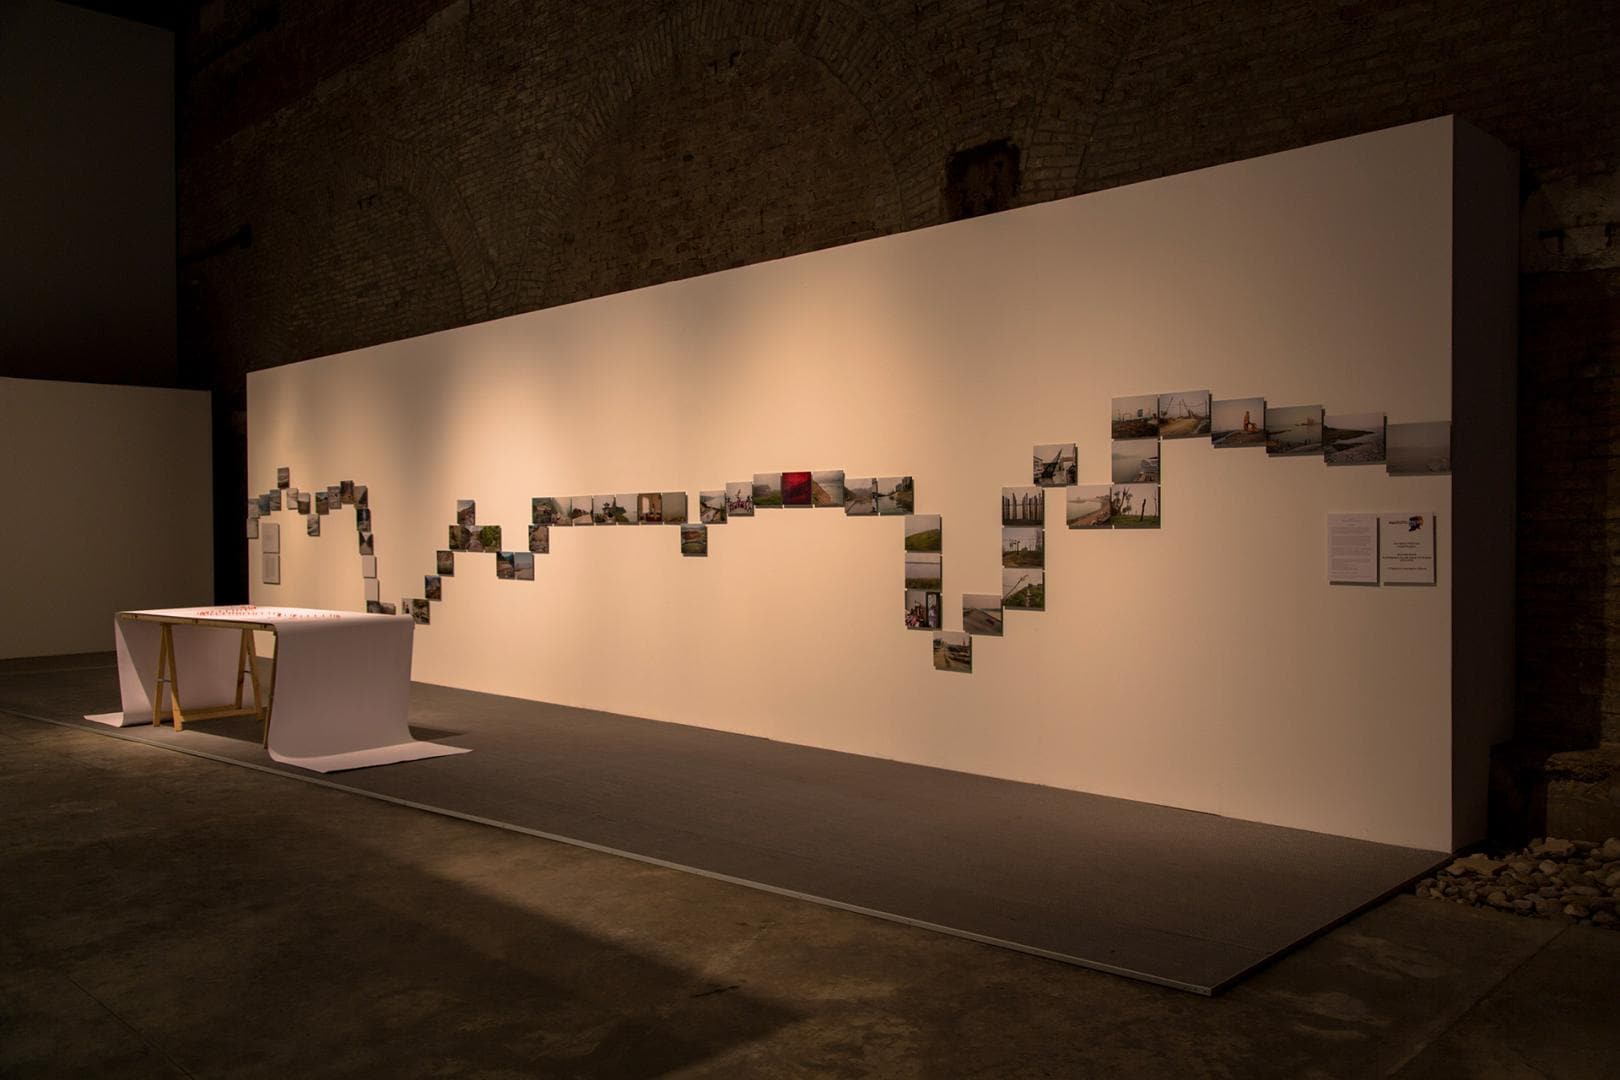 Yan Wang Preston @ Biennale Arte 2015